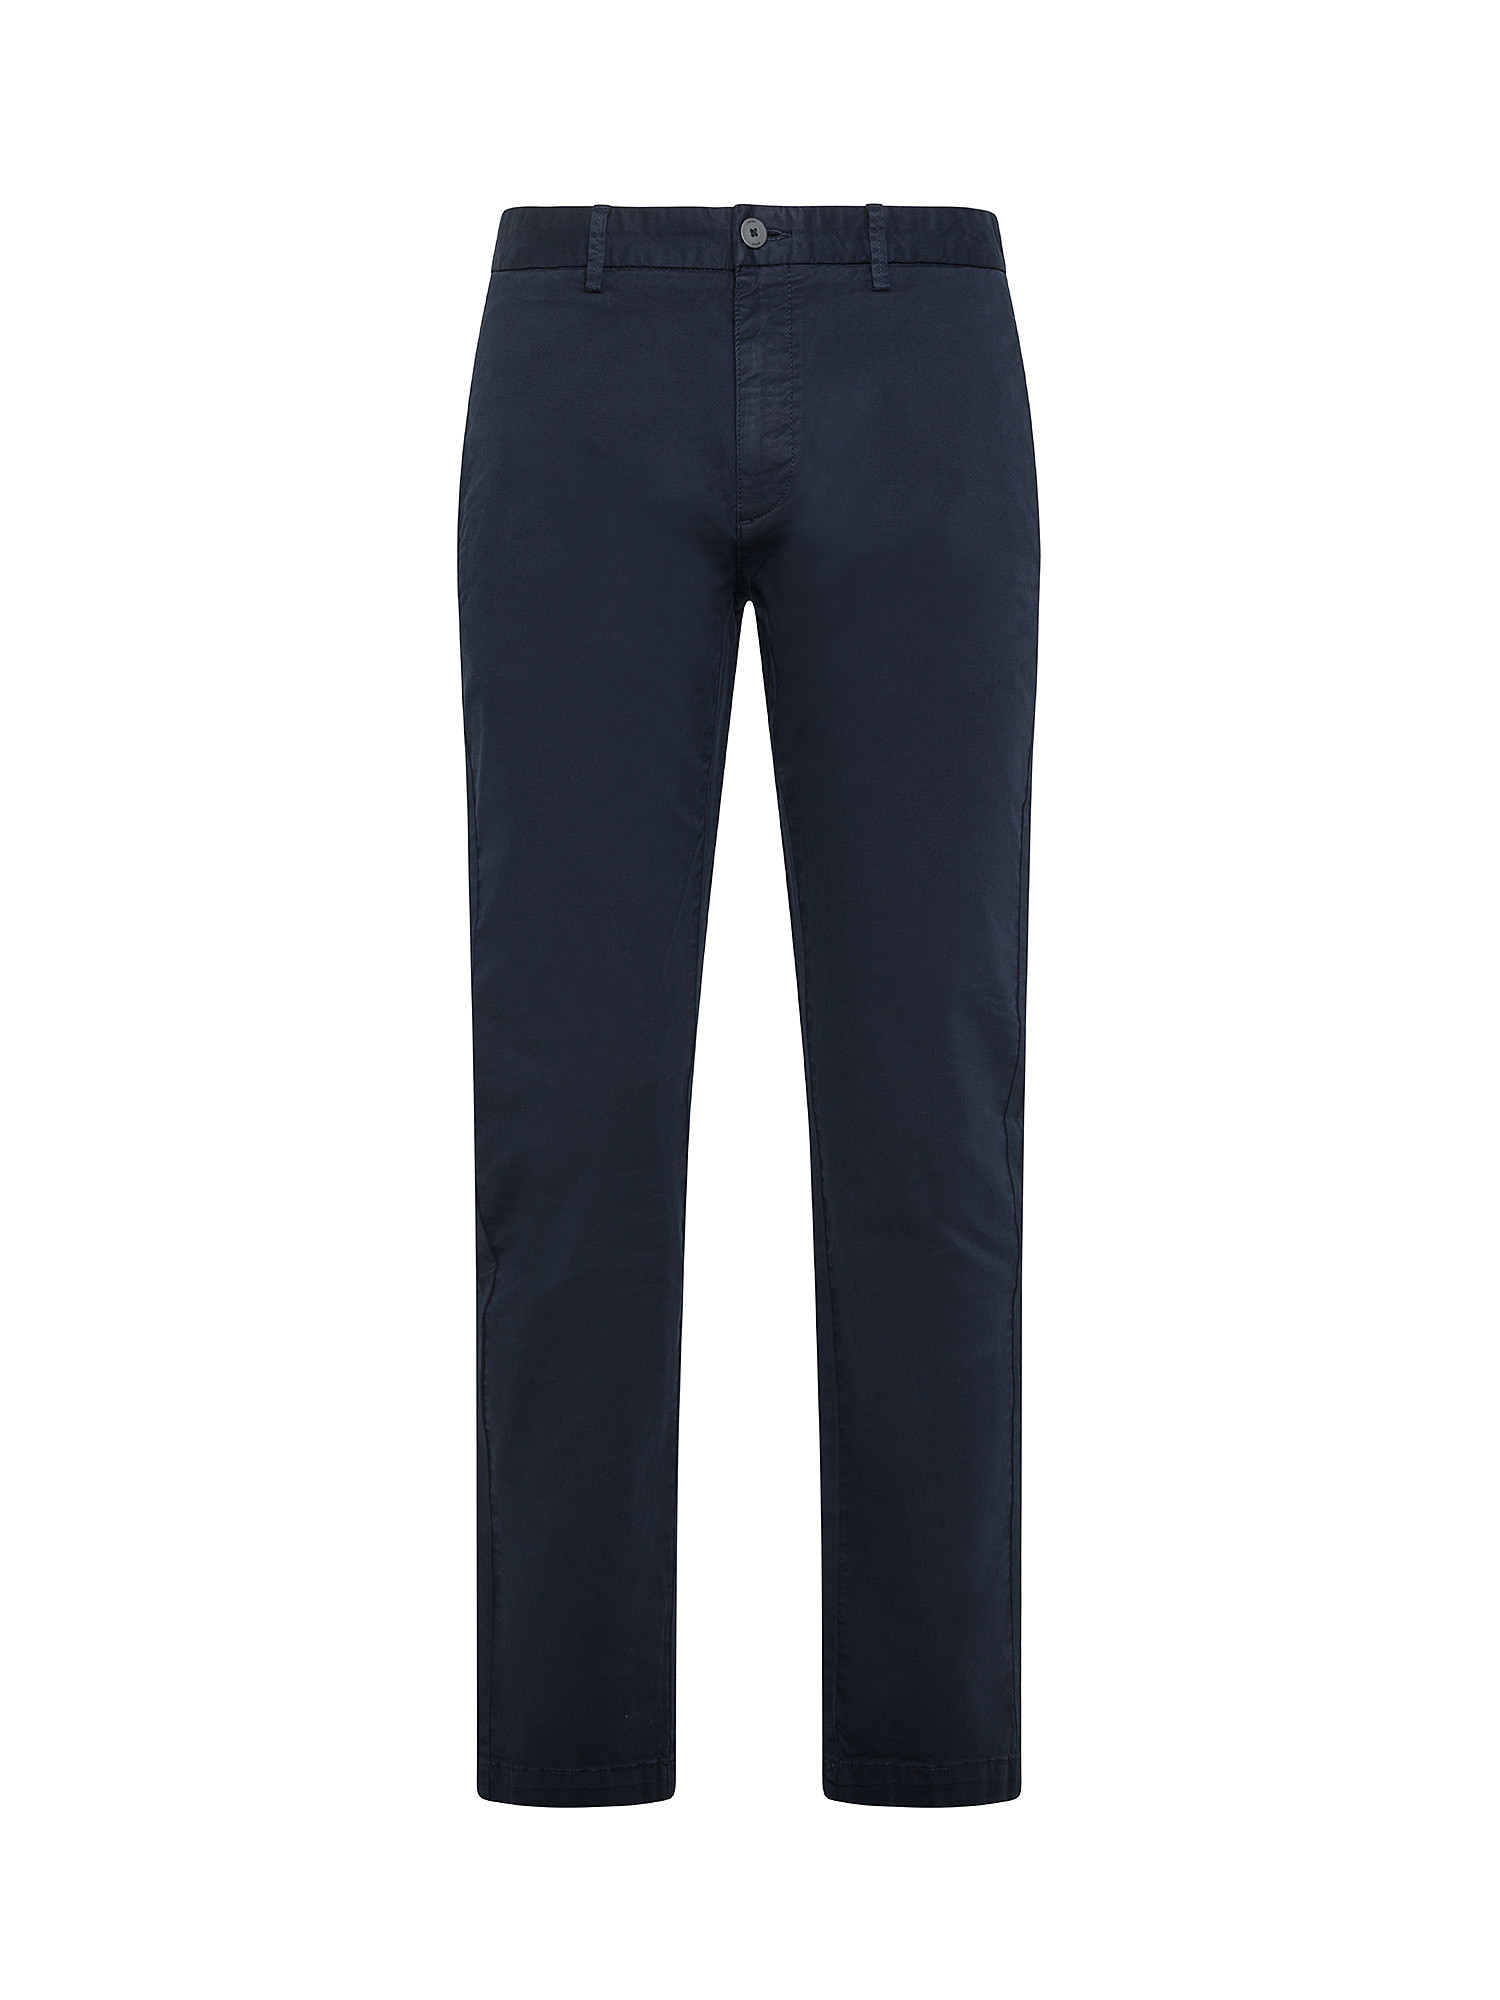 Hugo - Pantaloni chino slim fit, Blu scuro, large image number 0